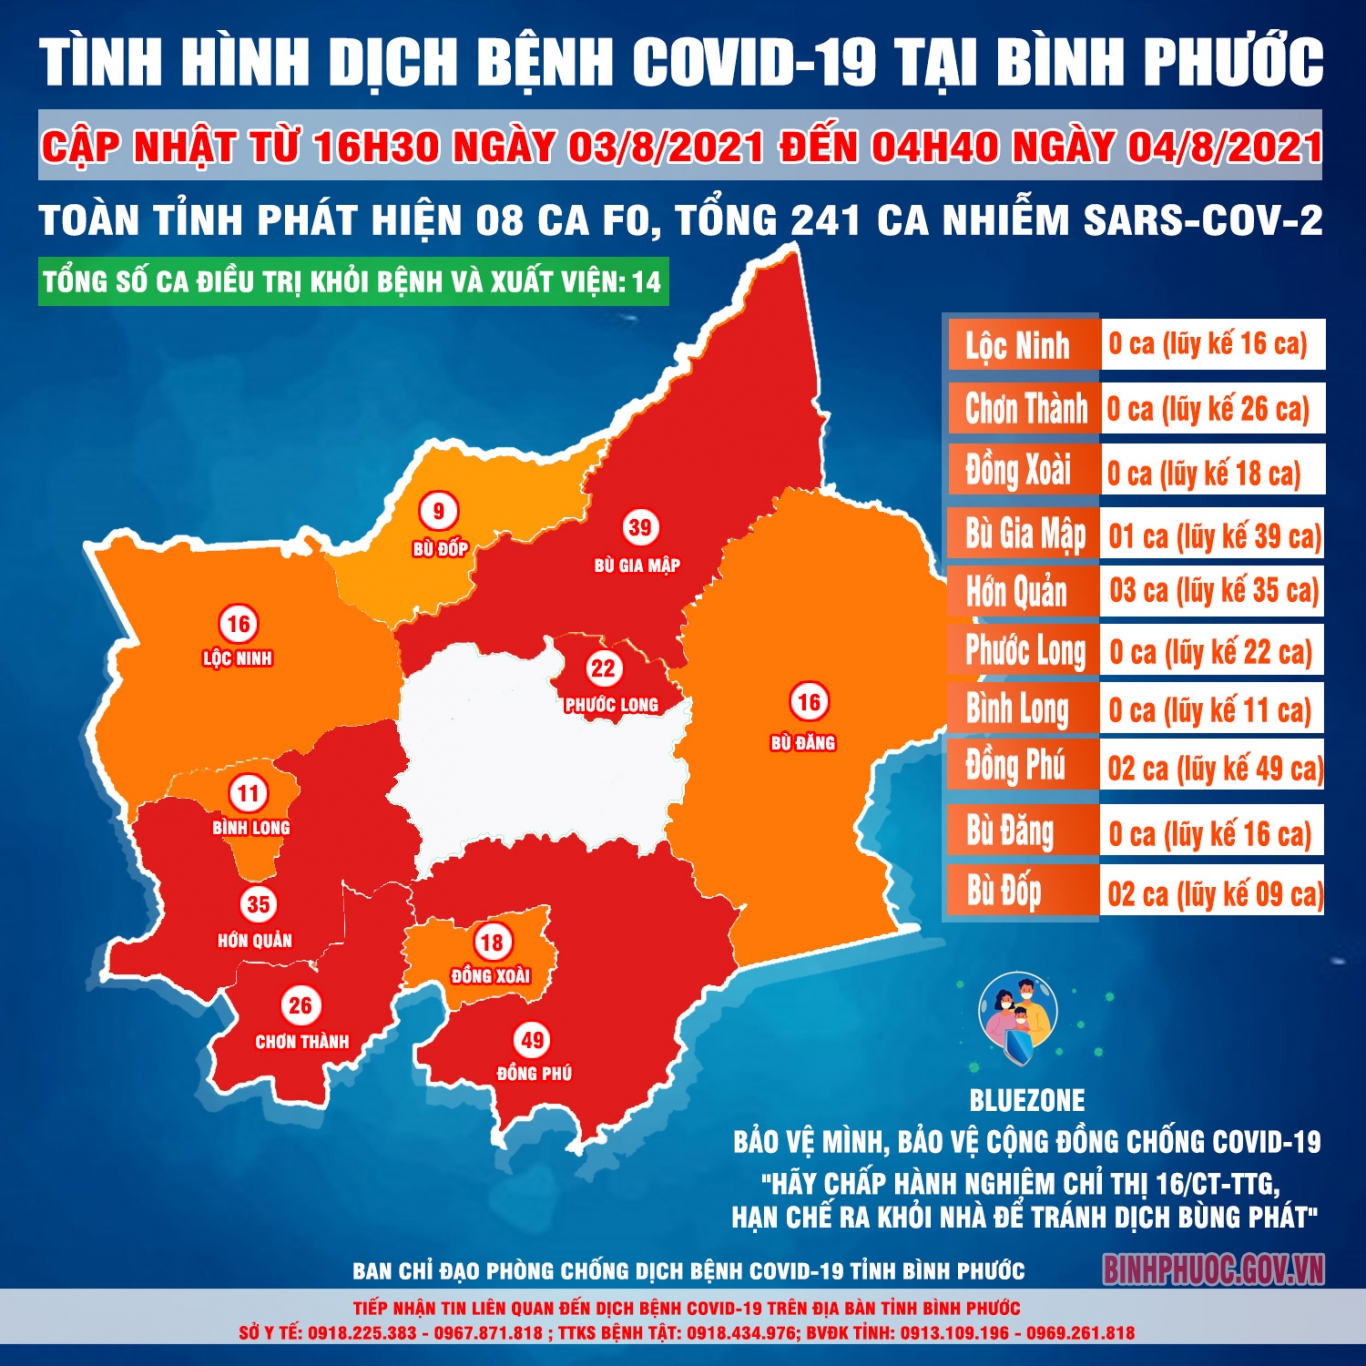 Nhờ sự theo dõi chặt chẽ và số liệu thống kê chính xác, tình hình dịch COVID-19 tại tỉnh Bình Phước đang được kiểm soát tốt hơn. Hãy cùng xem hình ảnh về sự tiến bộ của việc phòng chống dịch bệnh tại địa phương này.